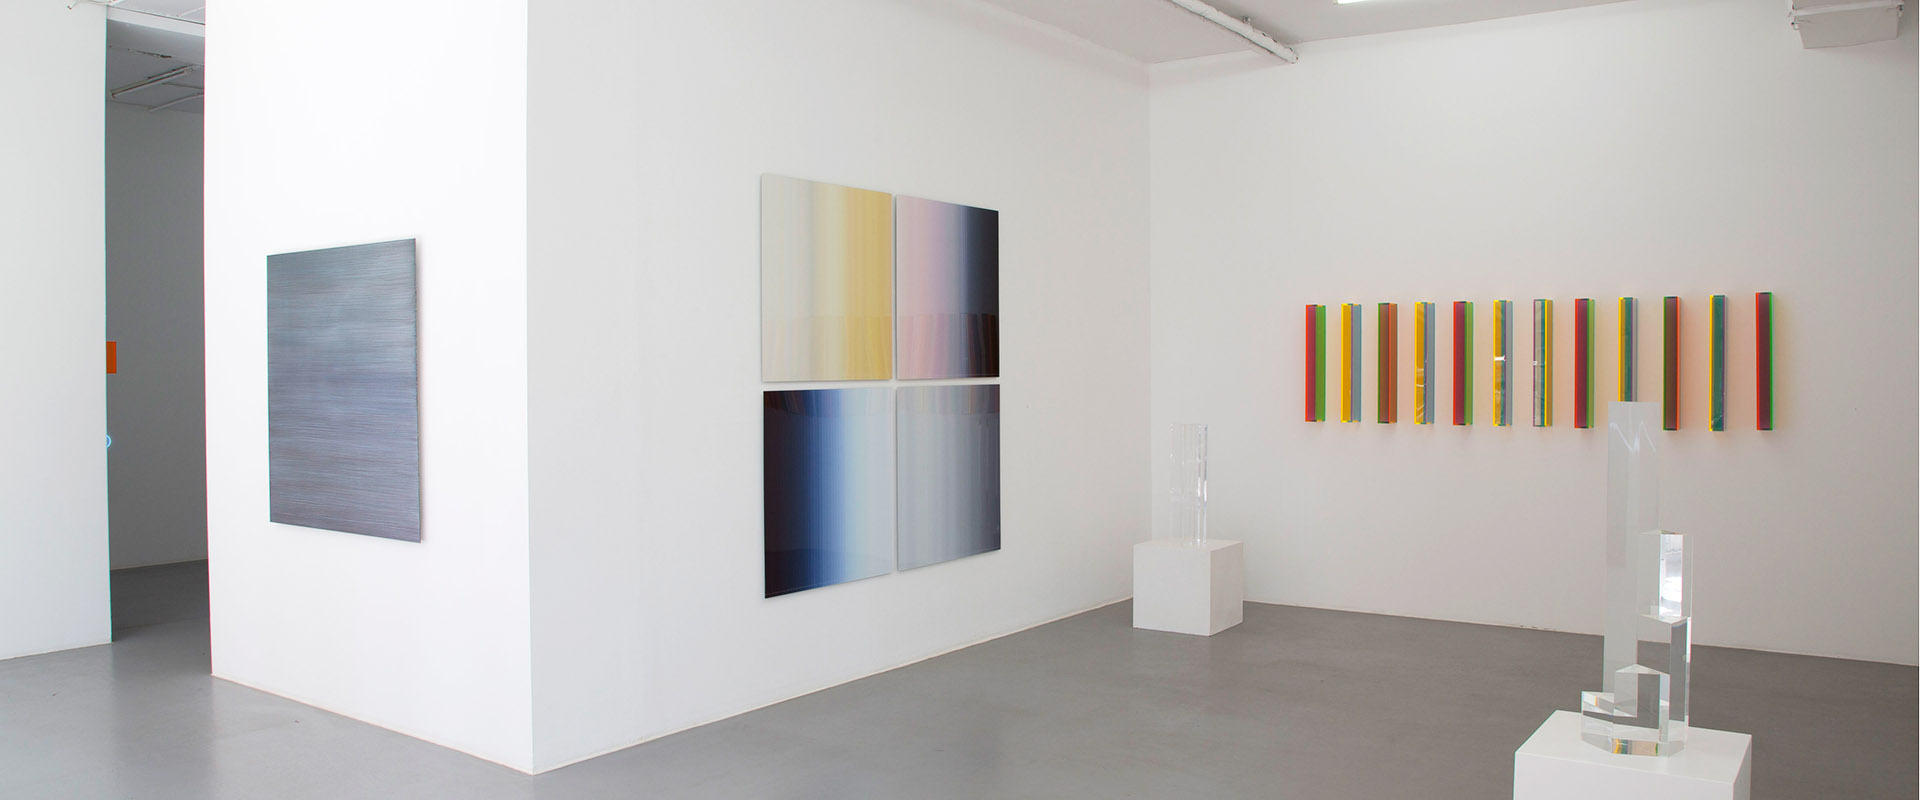 Ausstellungsansicht "FarbeLicht - LichtFarbe", Galerie Renate Bender 2017